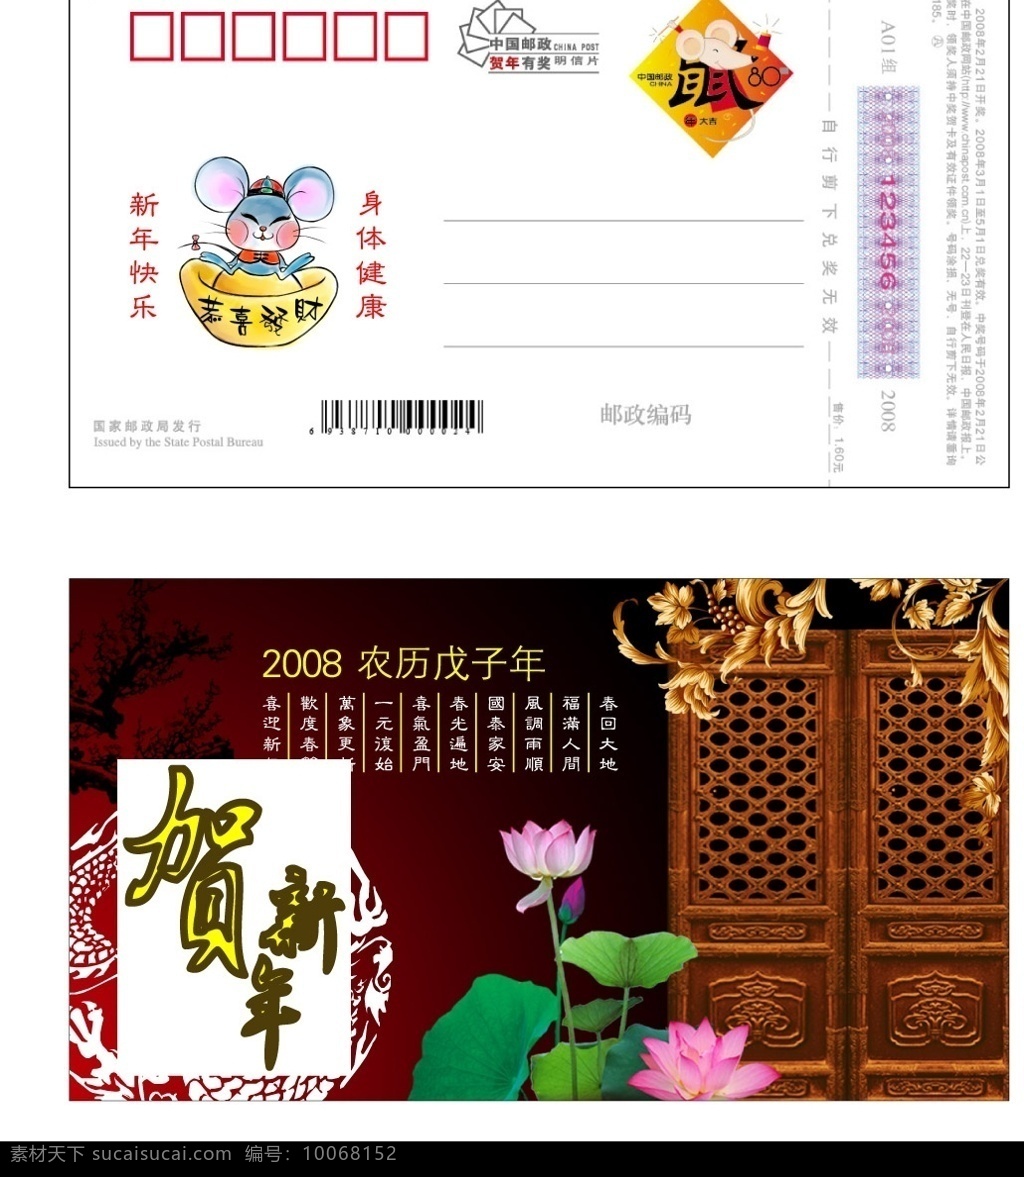 中国 邮政 鼠年 贺年 明信片 贺卡卡片 荷花 矢量素材 其他设计 矢量图库